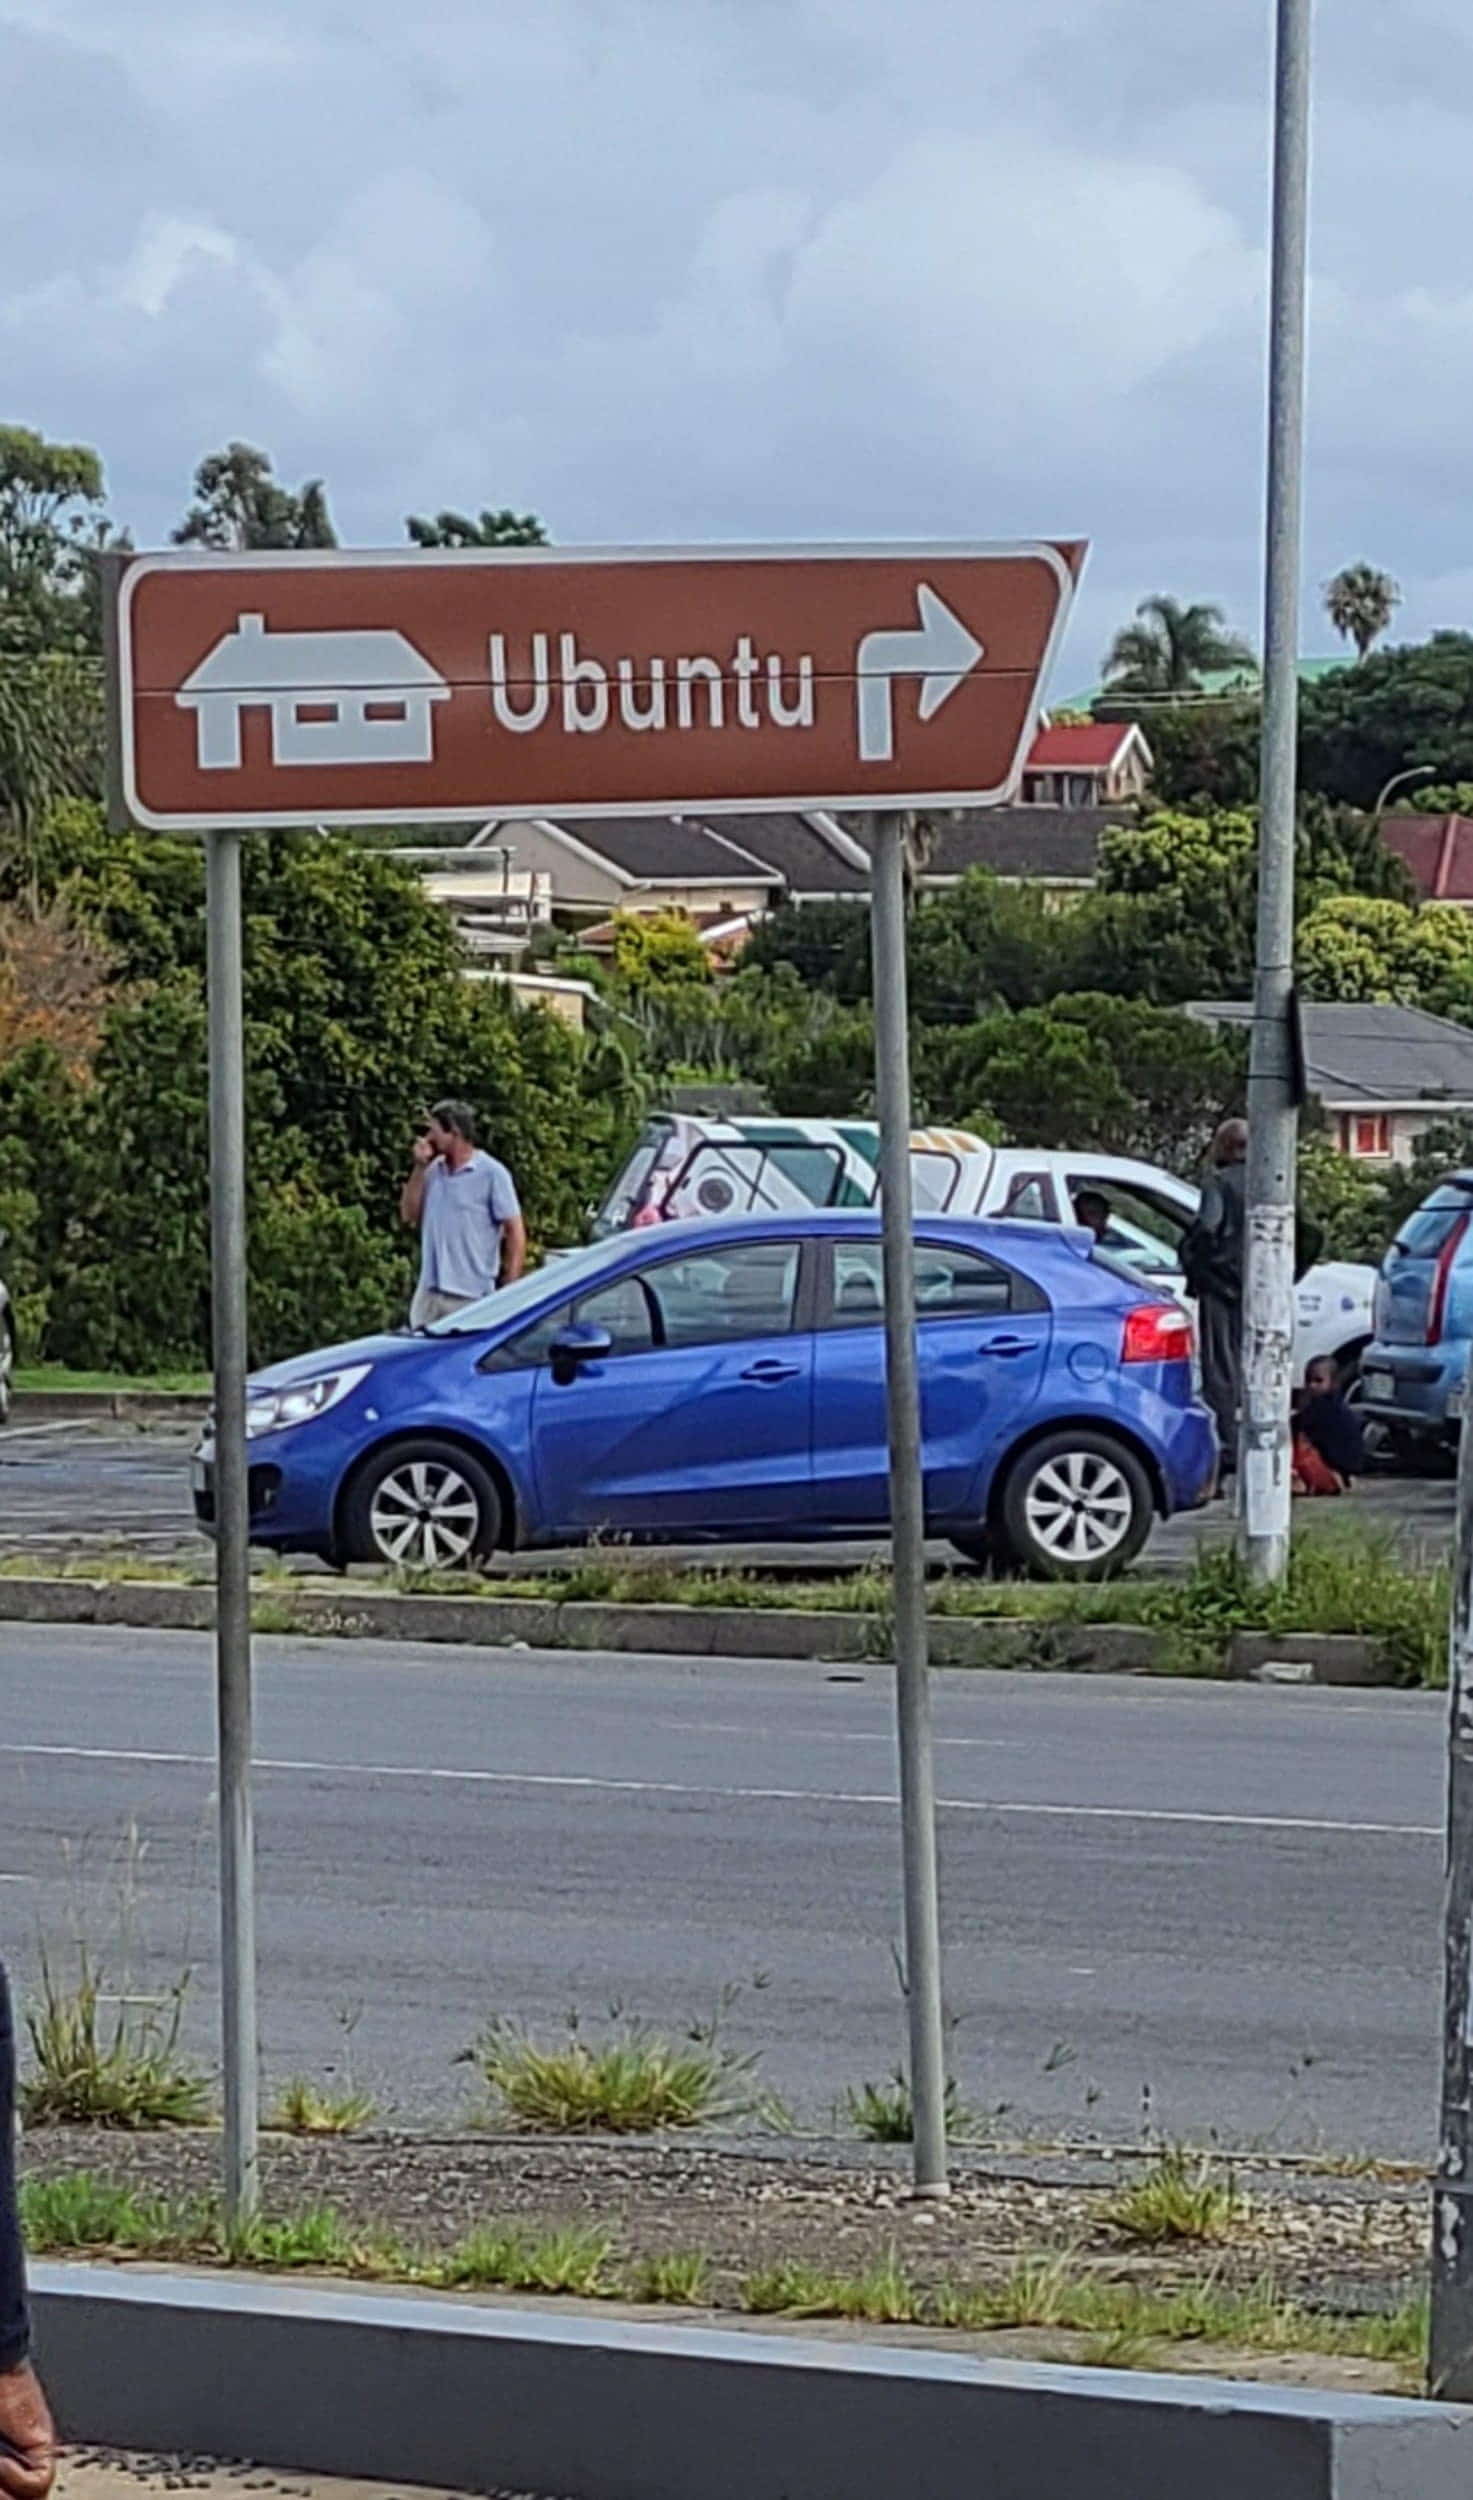 Ubuntu road sign